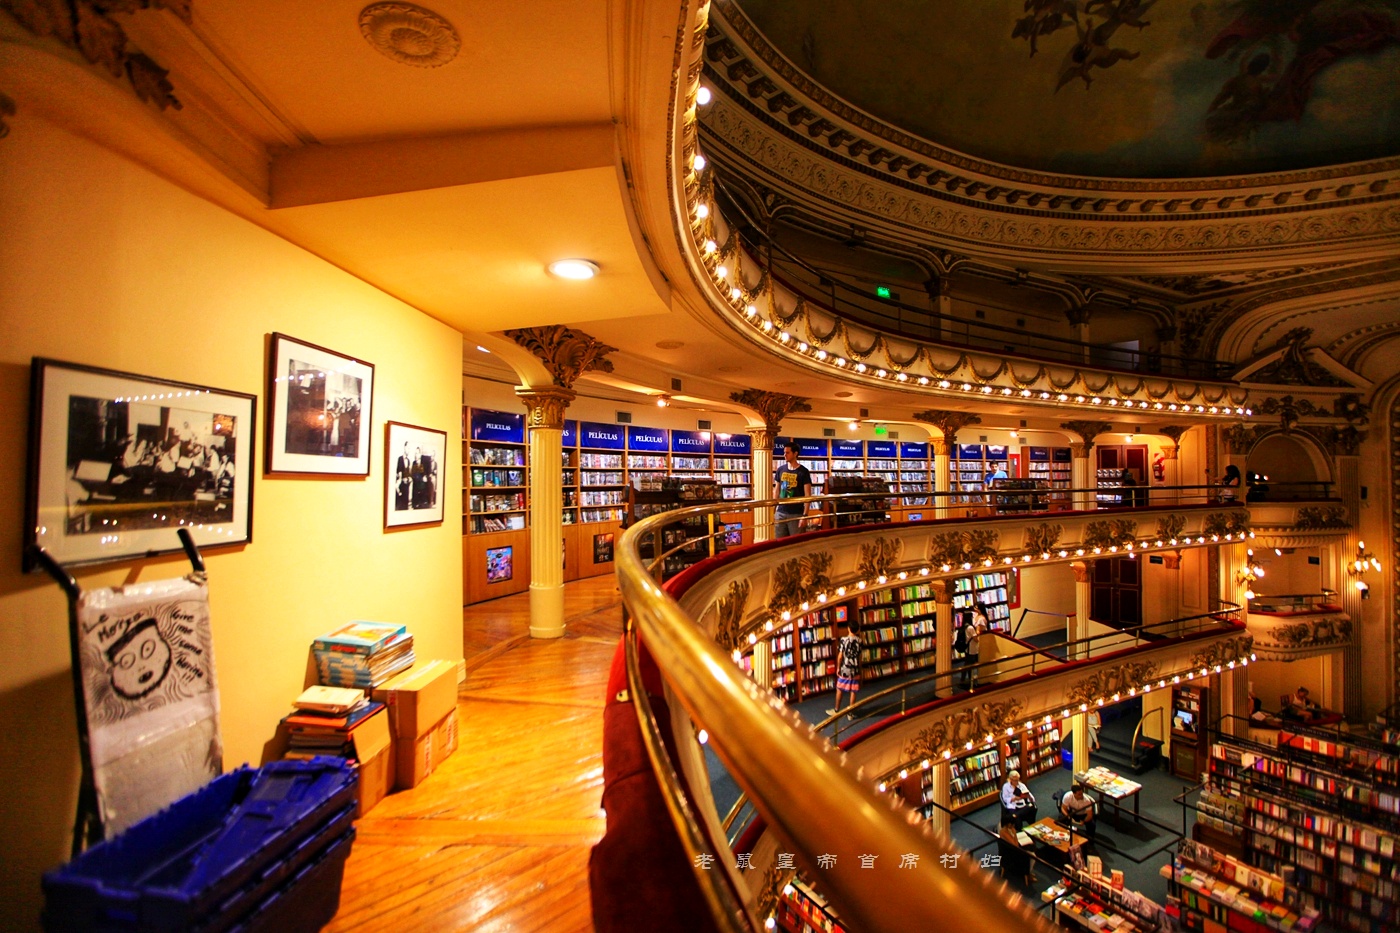 世界最美书店,由女王剧院改建气势恢宏,美到让墨西哥大使犯错